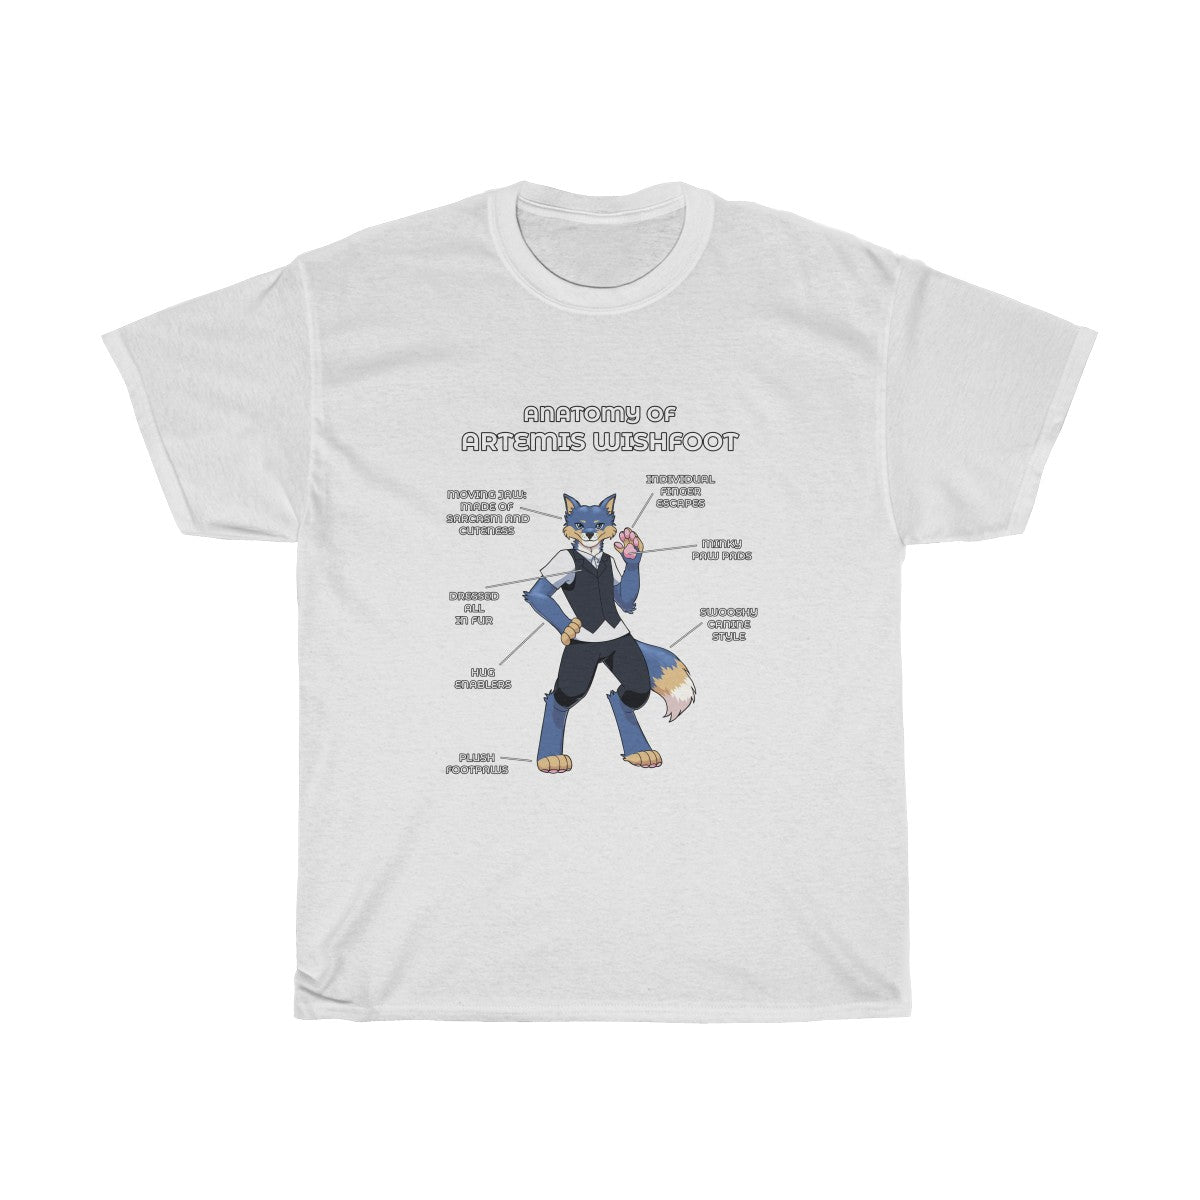 Anatomy of Artemis - T-Shirt T-Shirt Artemis Wishfoot White S 